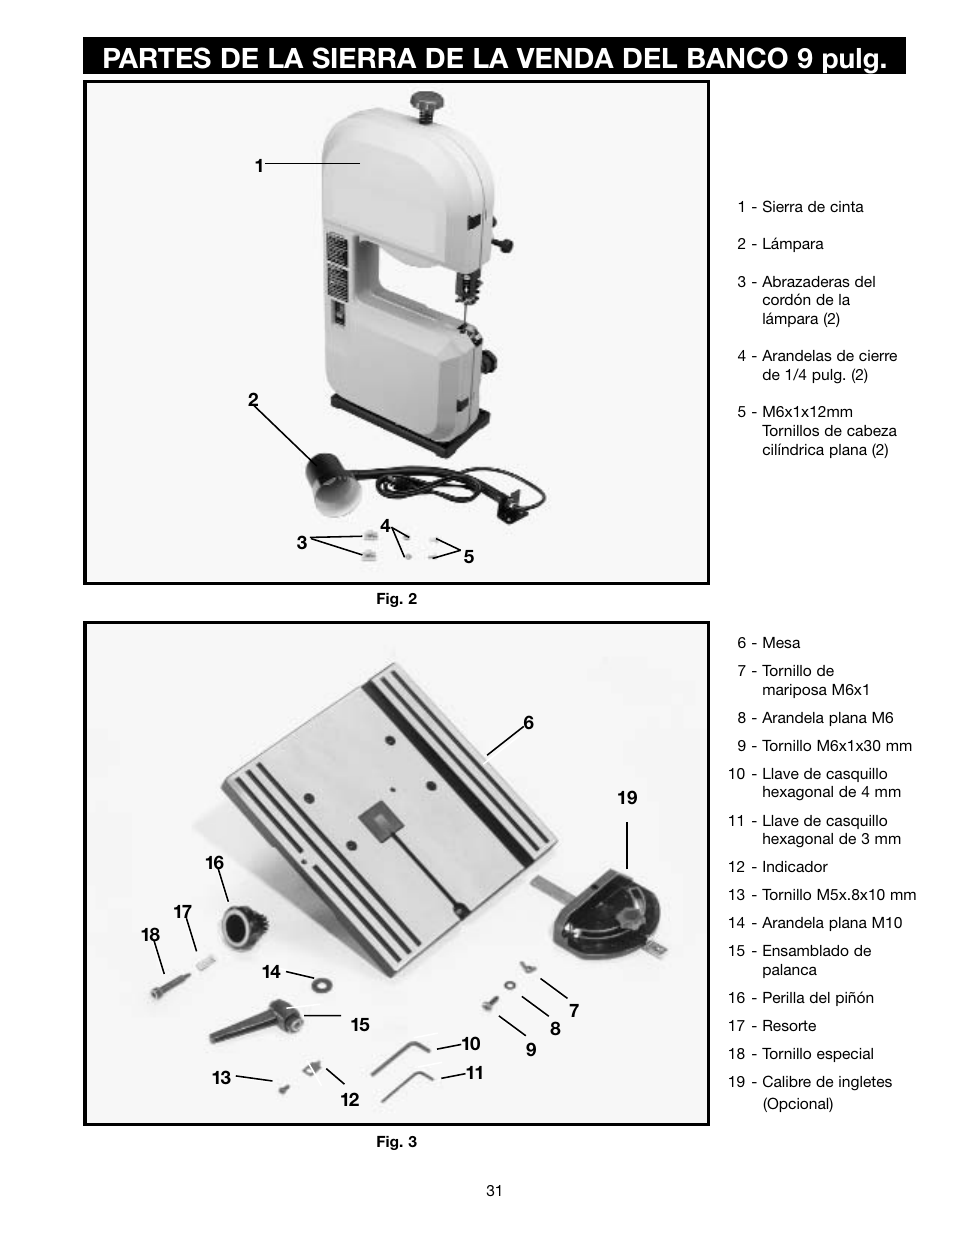 Partes de la sierra de la venda del banco 9 pulg | Delta ShopMaster SM400 User Manual | Page 31 / 72